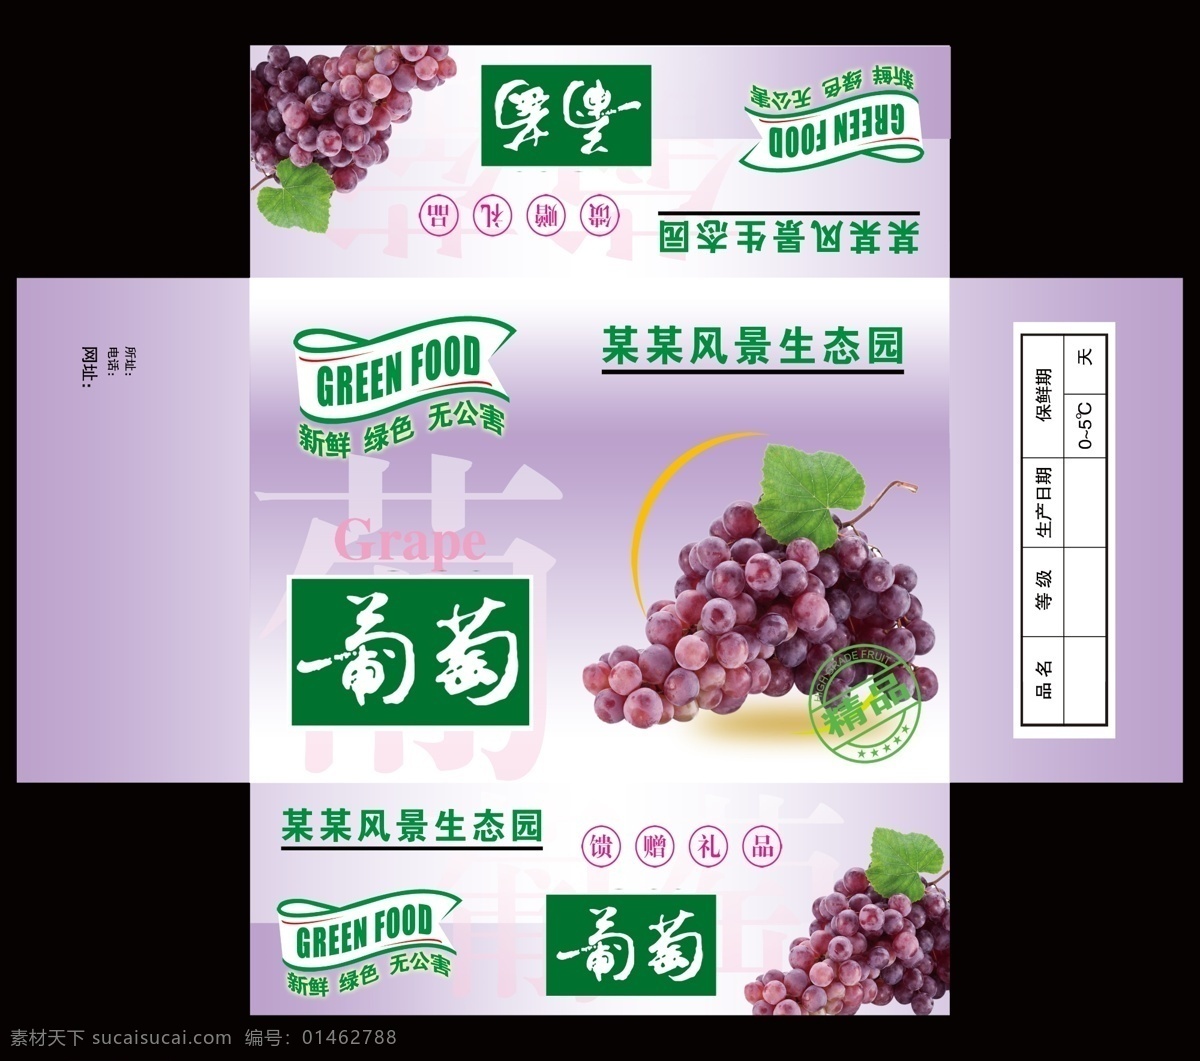 葡萄包装 葡萄 葡萄包装设计 包装设计 广告设计模板 源文件